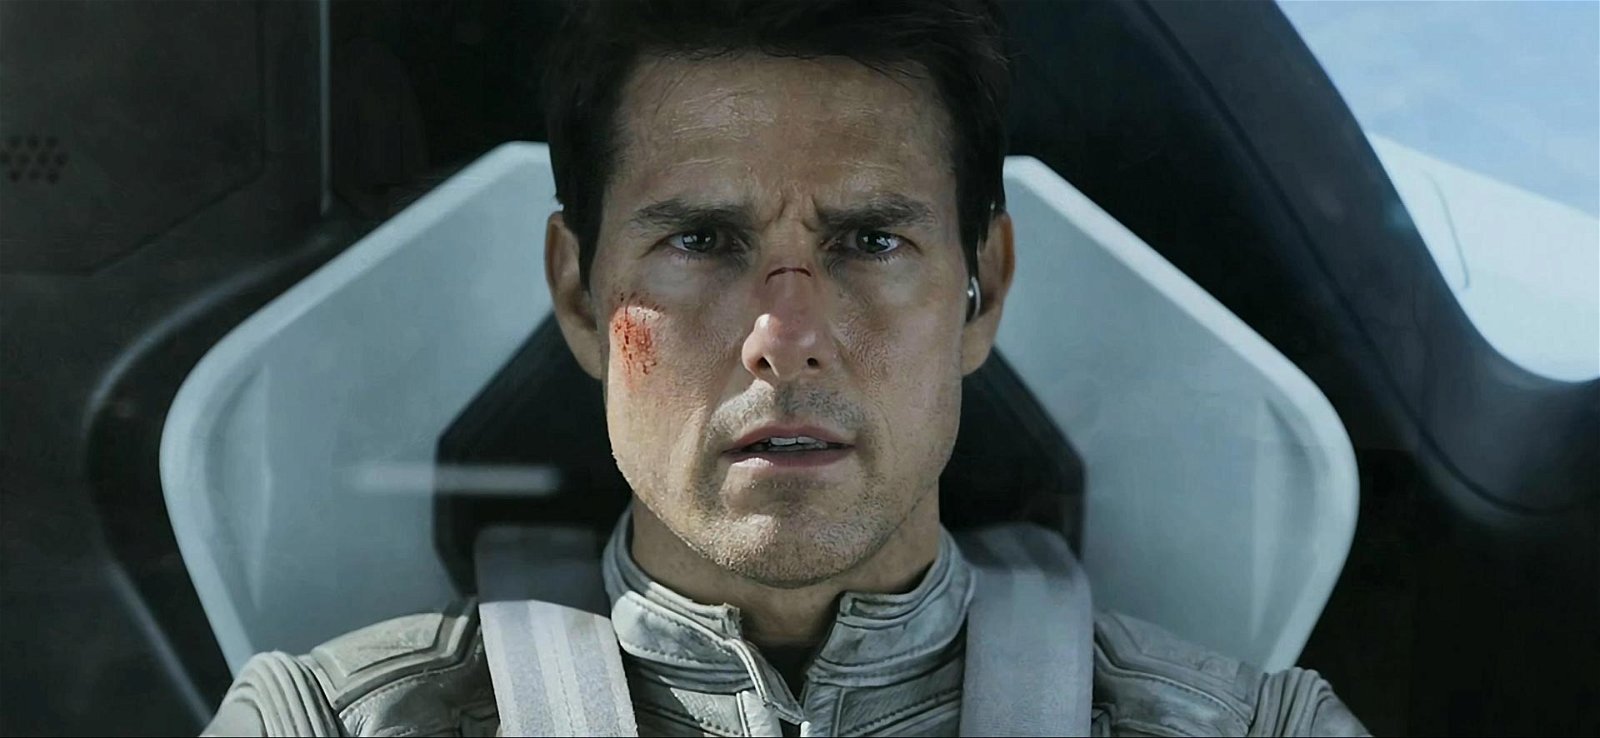 Missa inte: Tom Cruise i postapokalyptiskt äventyr